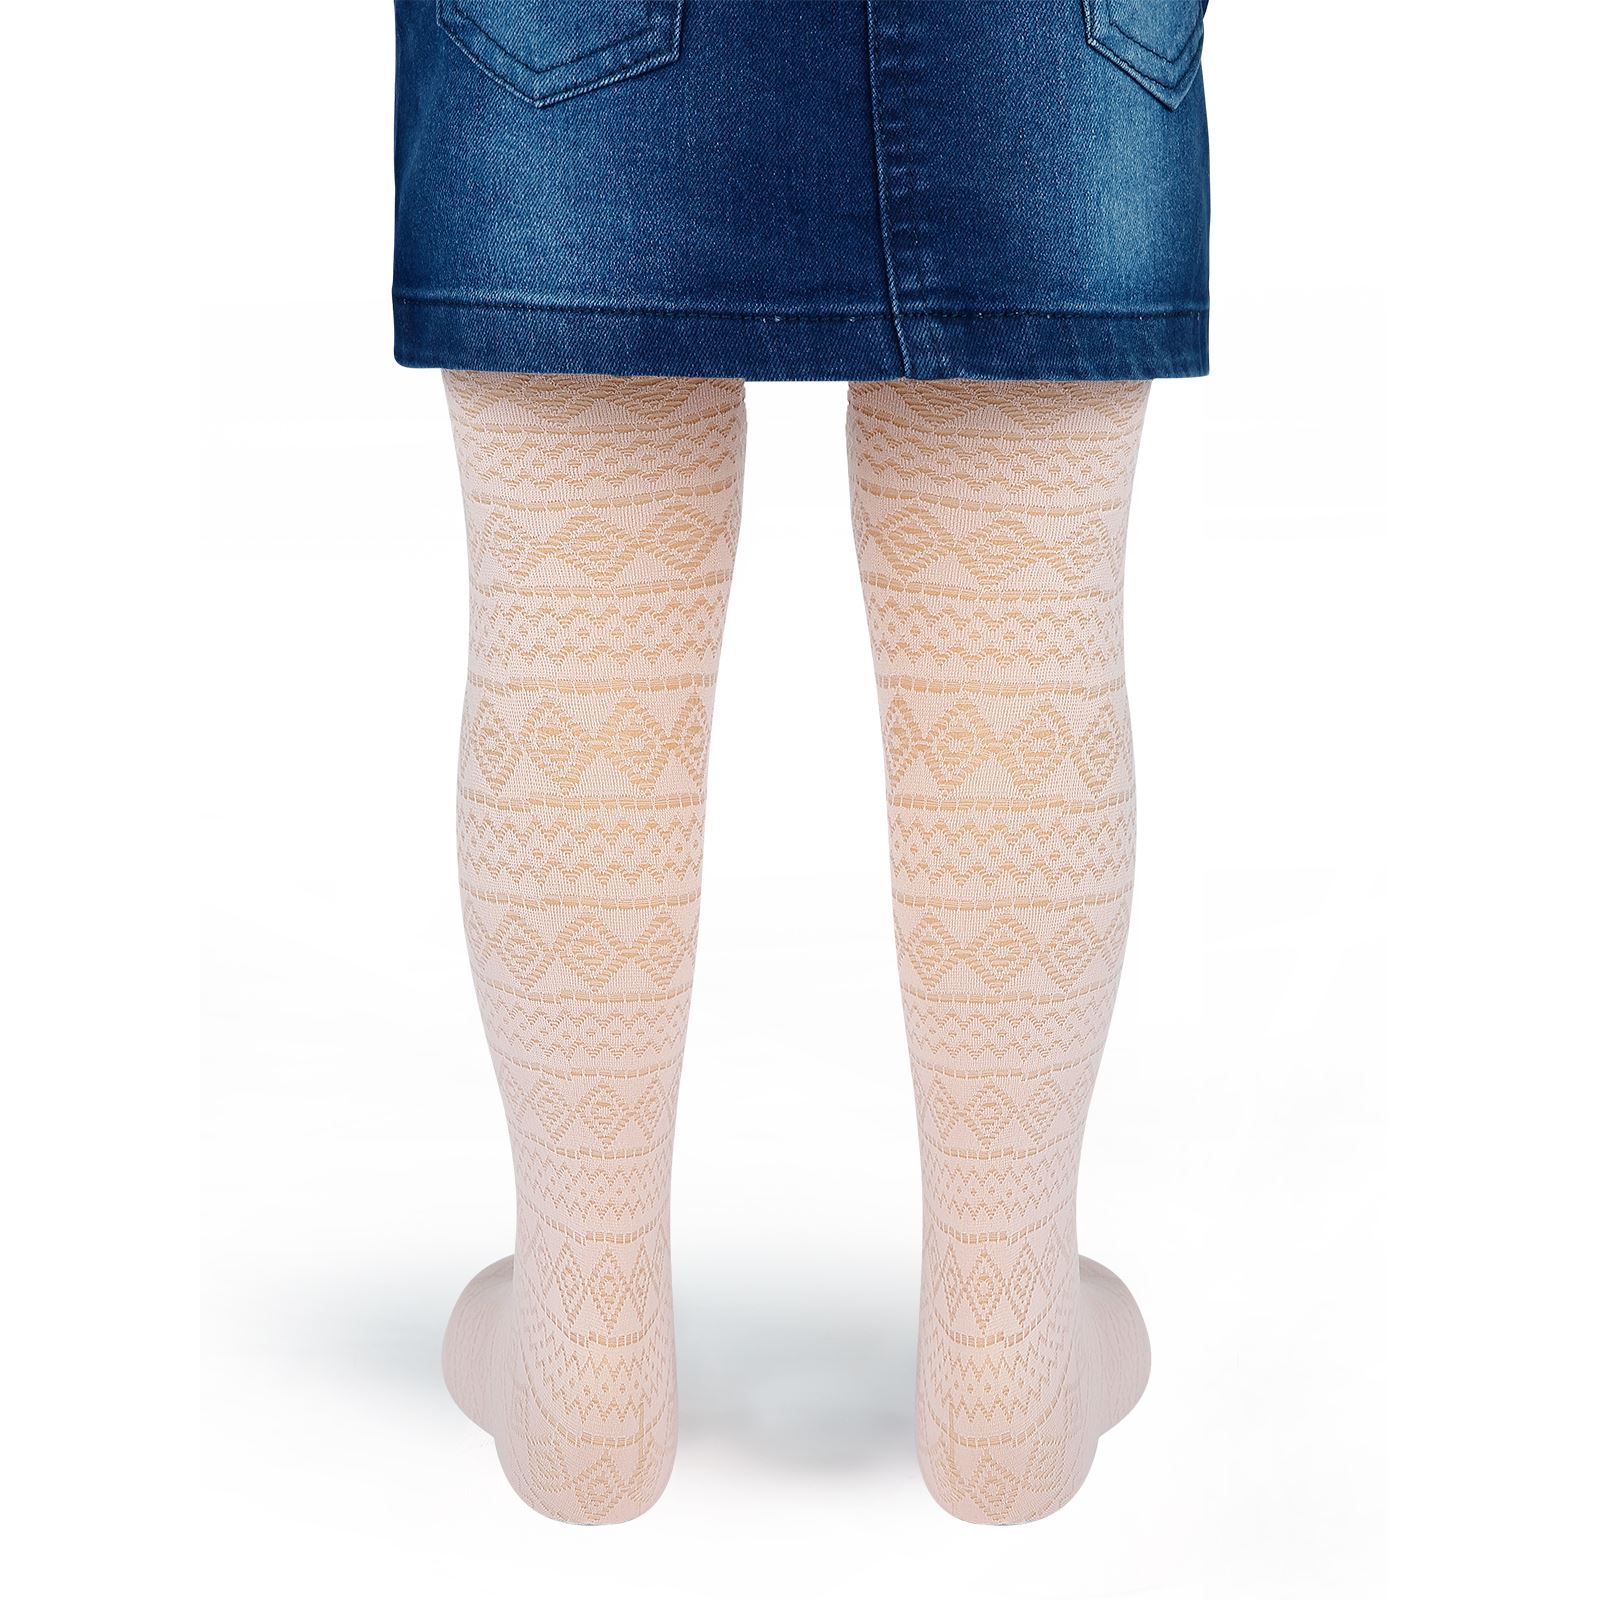 Bella Calze Kız Çocuk Külotlu Çorap 2-11 Yaş Pudra